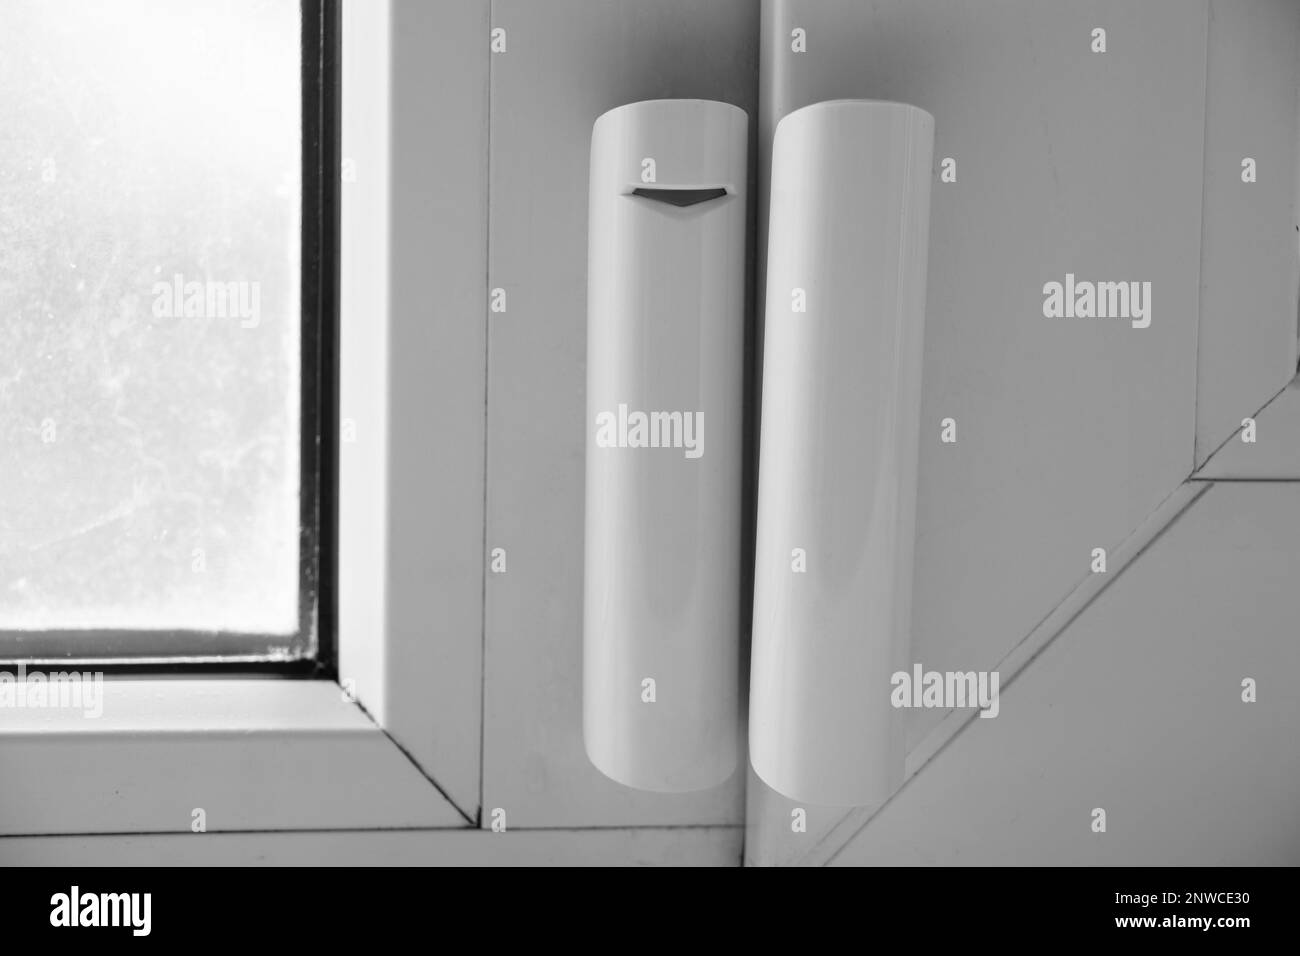 Sensor zum Öffnen des Fensters hängt am Fenster, Hausalarmierungssystem, Hausschutz, Hausalarm Stockfoto